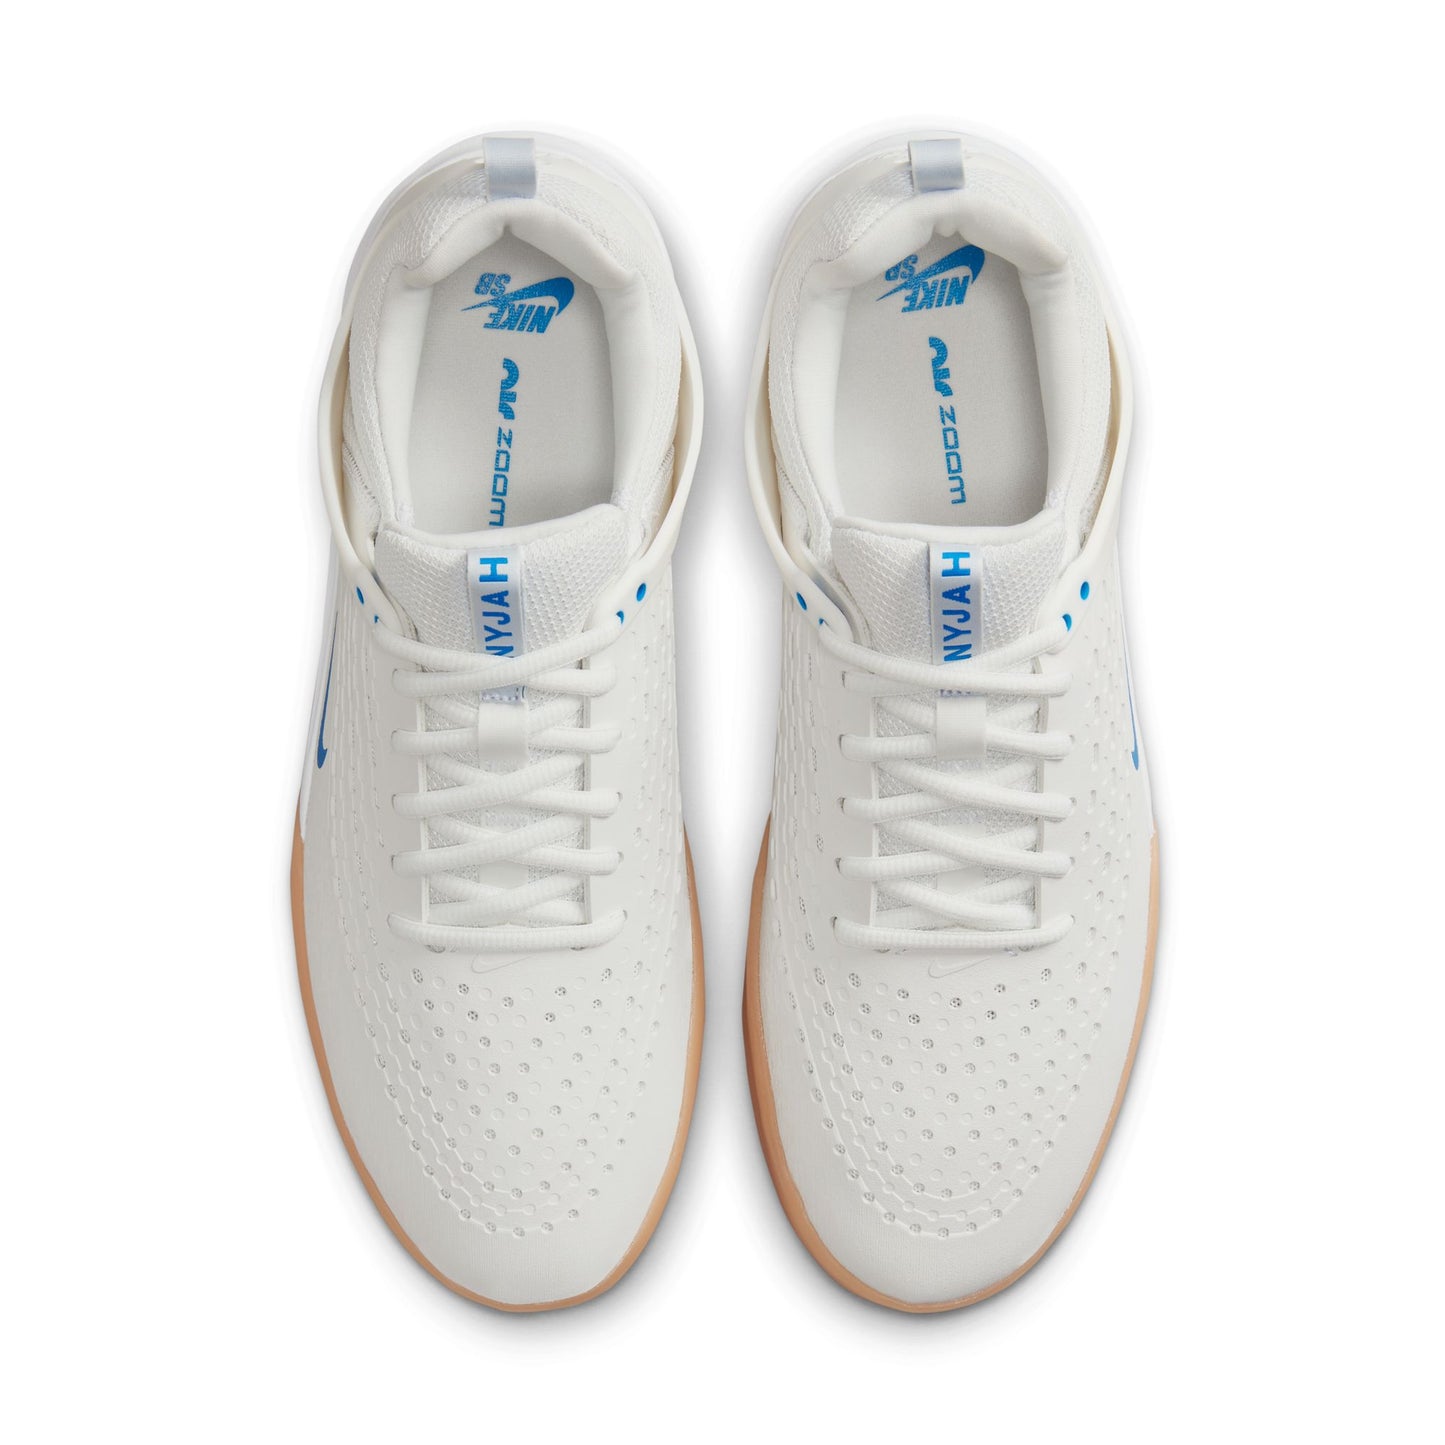 Zapatillas Nike SB Zoom Nyjah 3 Blanco cumbre/Blanco cumbre/Blanco/Azul foto